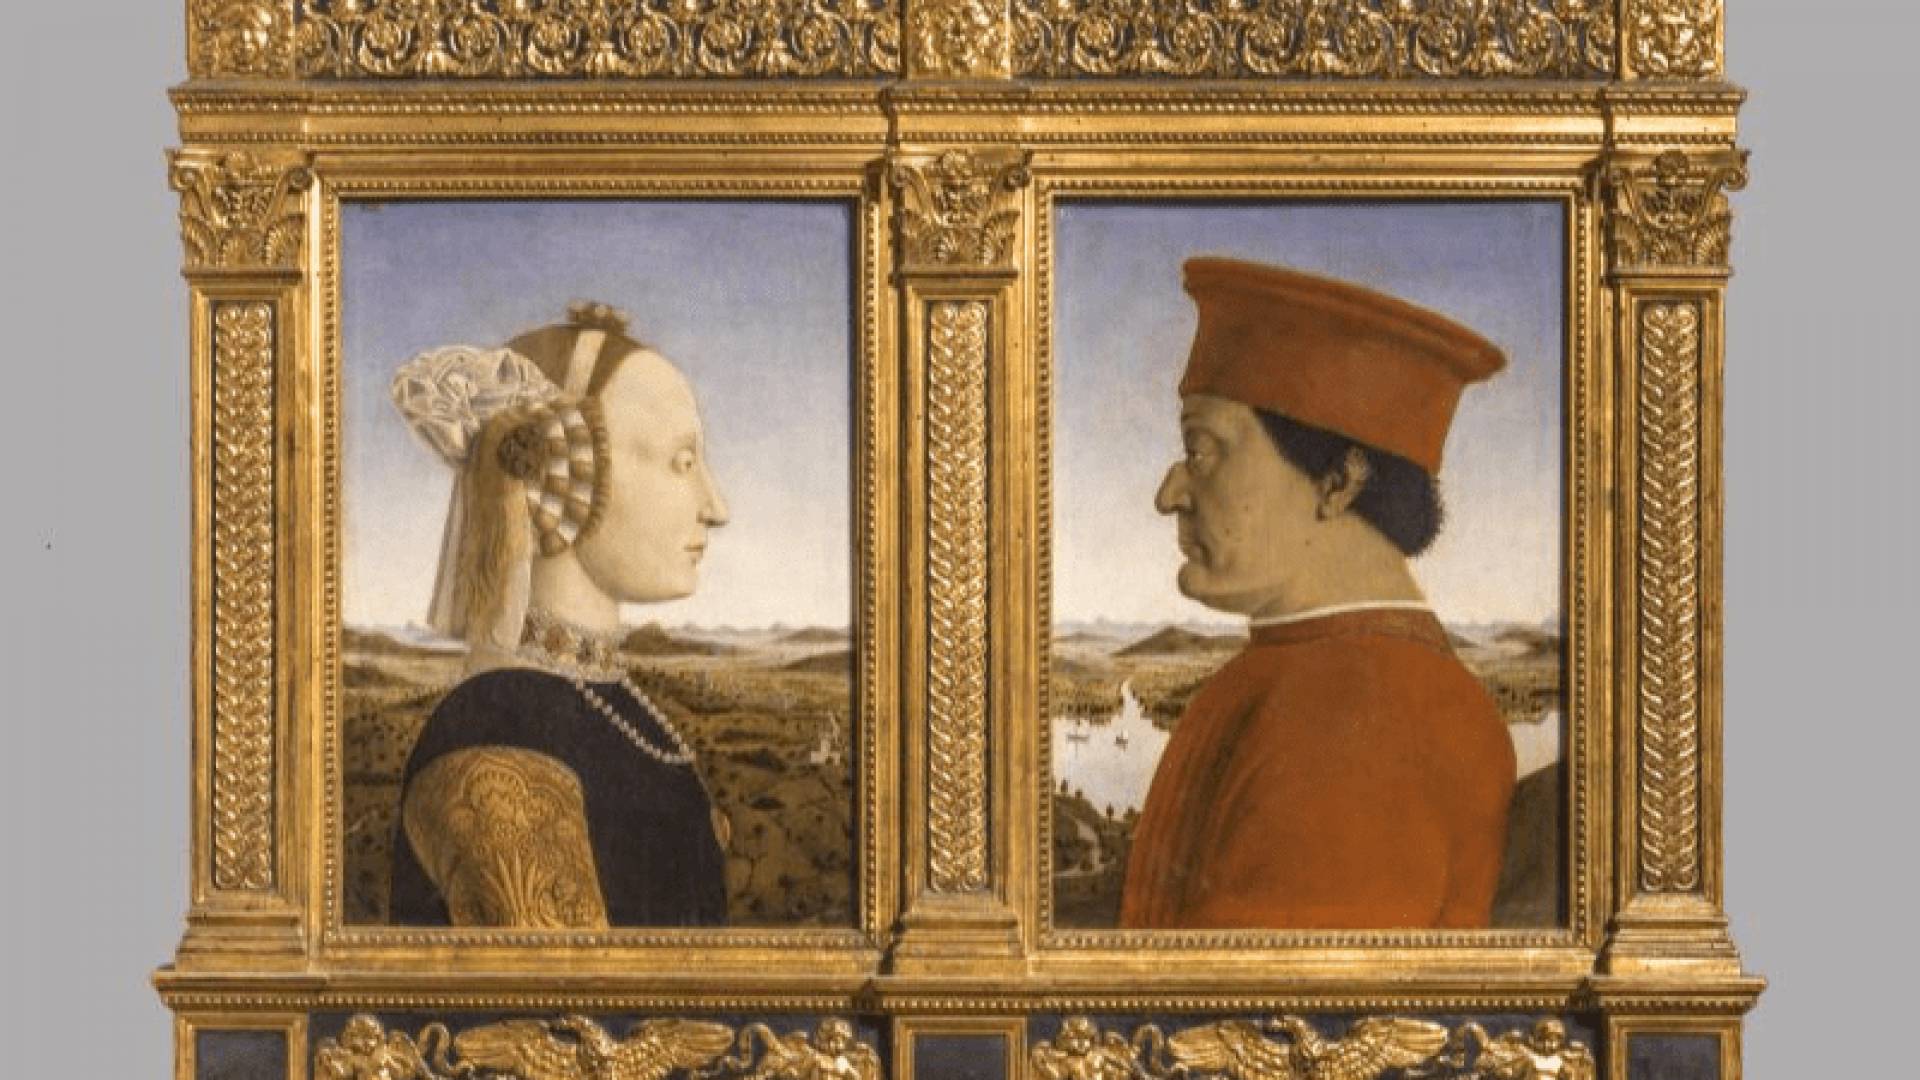 GALERIE DES OFFICES, Piero Della Francesca-Ducs D'urbin_Salle A9